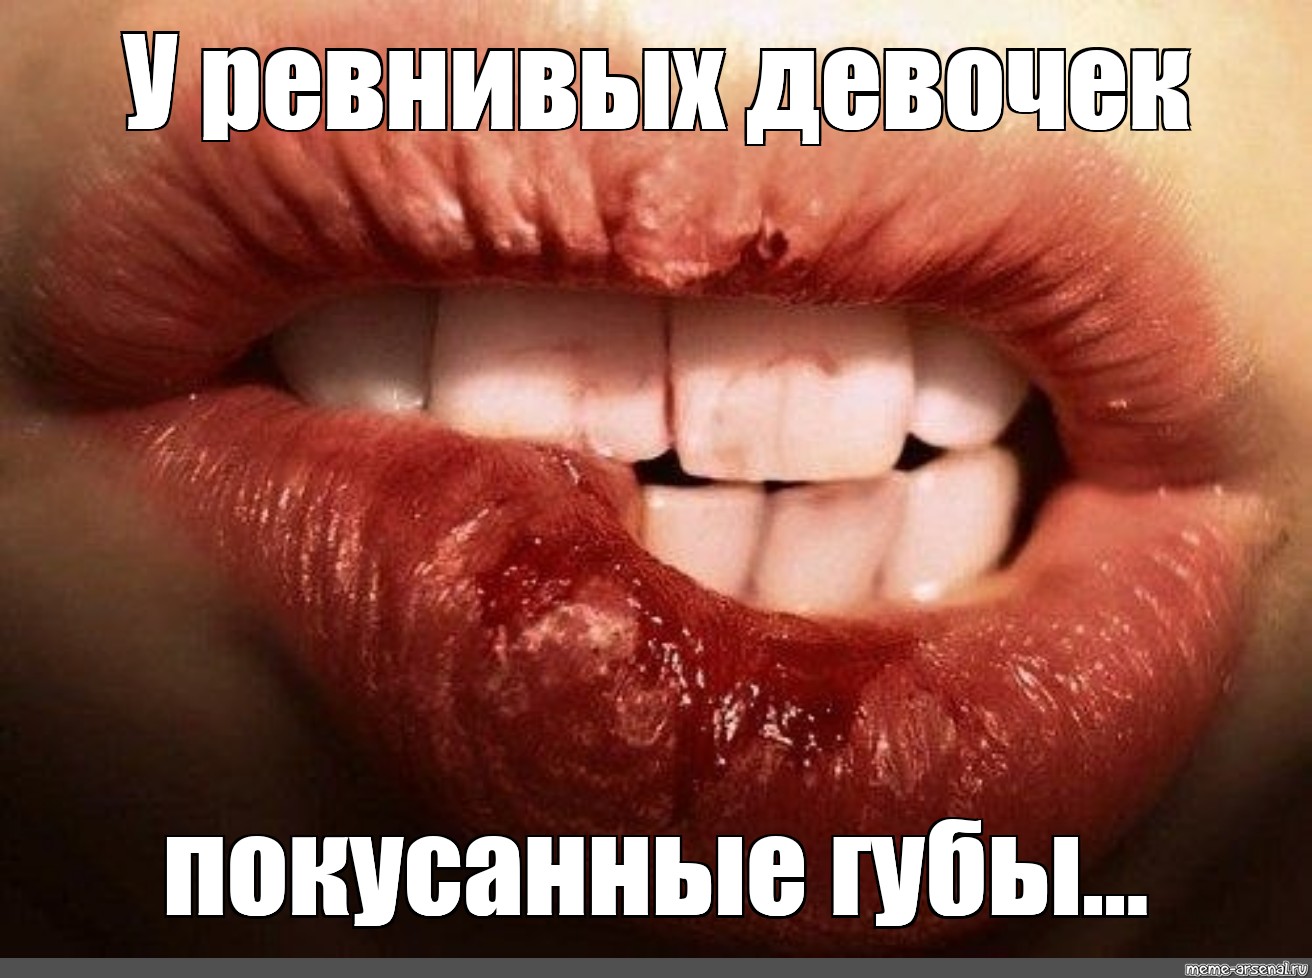 Share in Facebook. jealous girls bitten lips. 